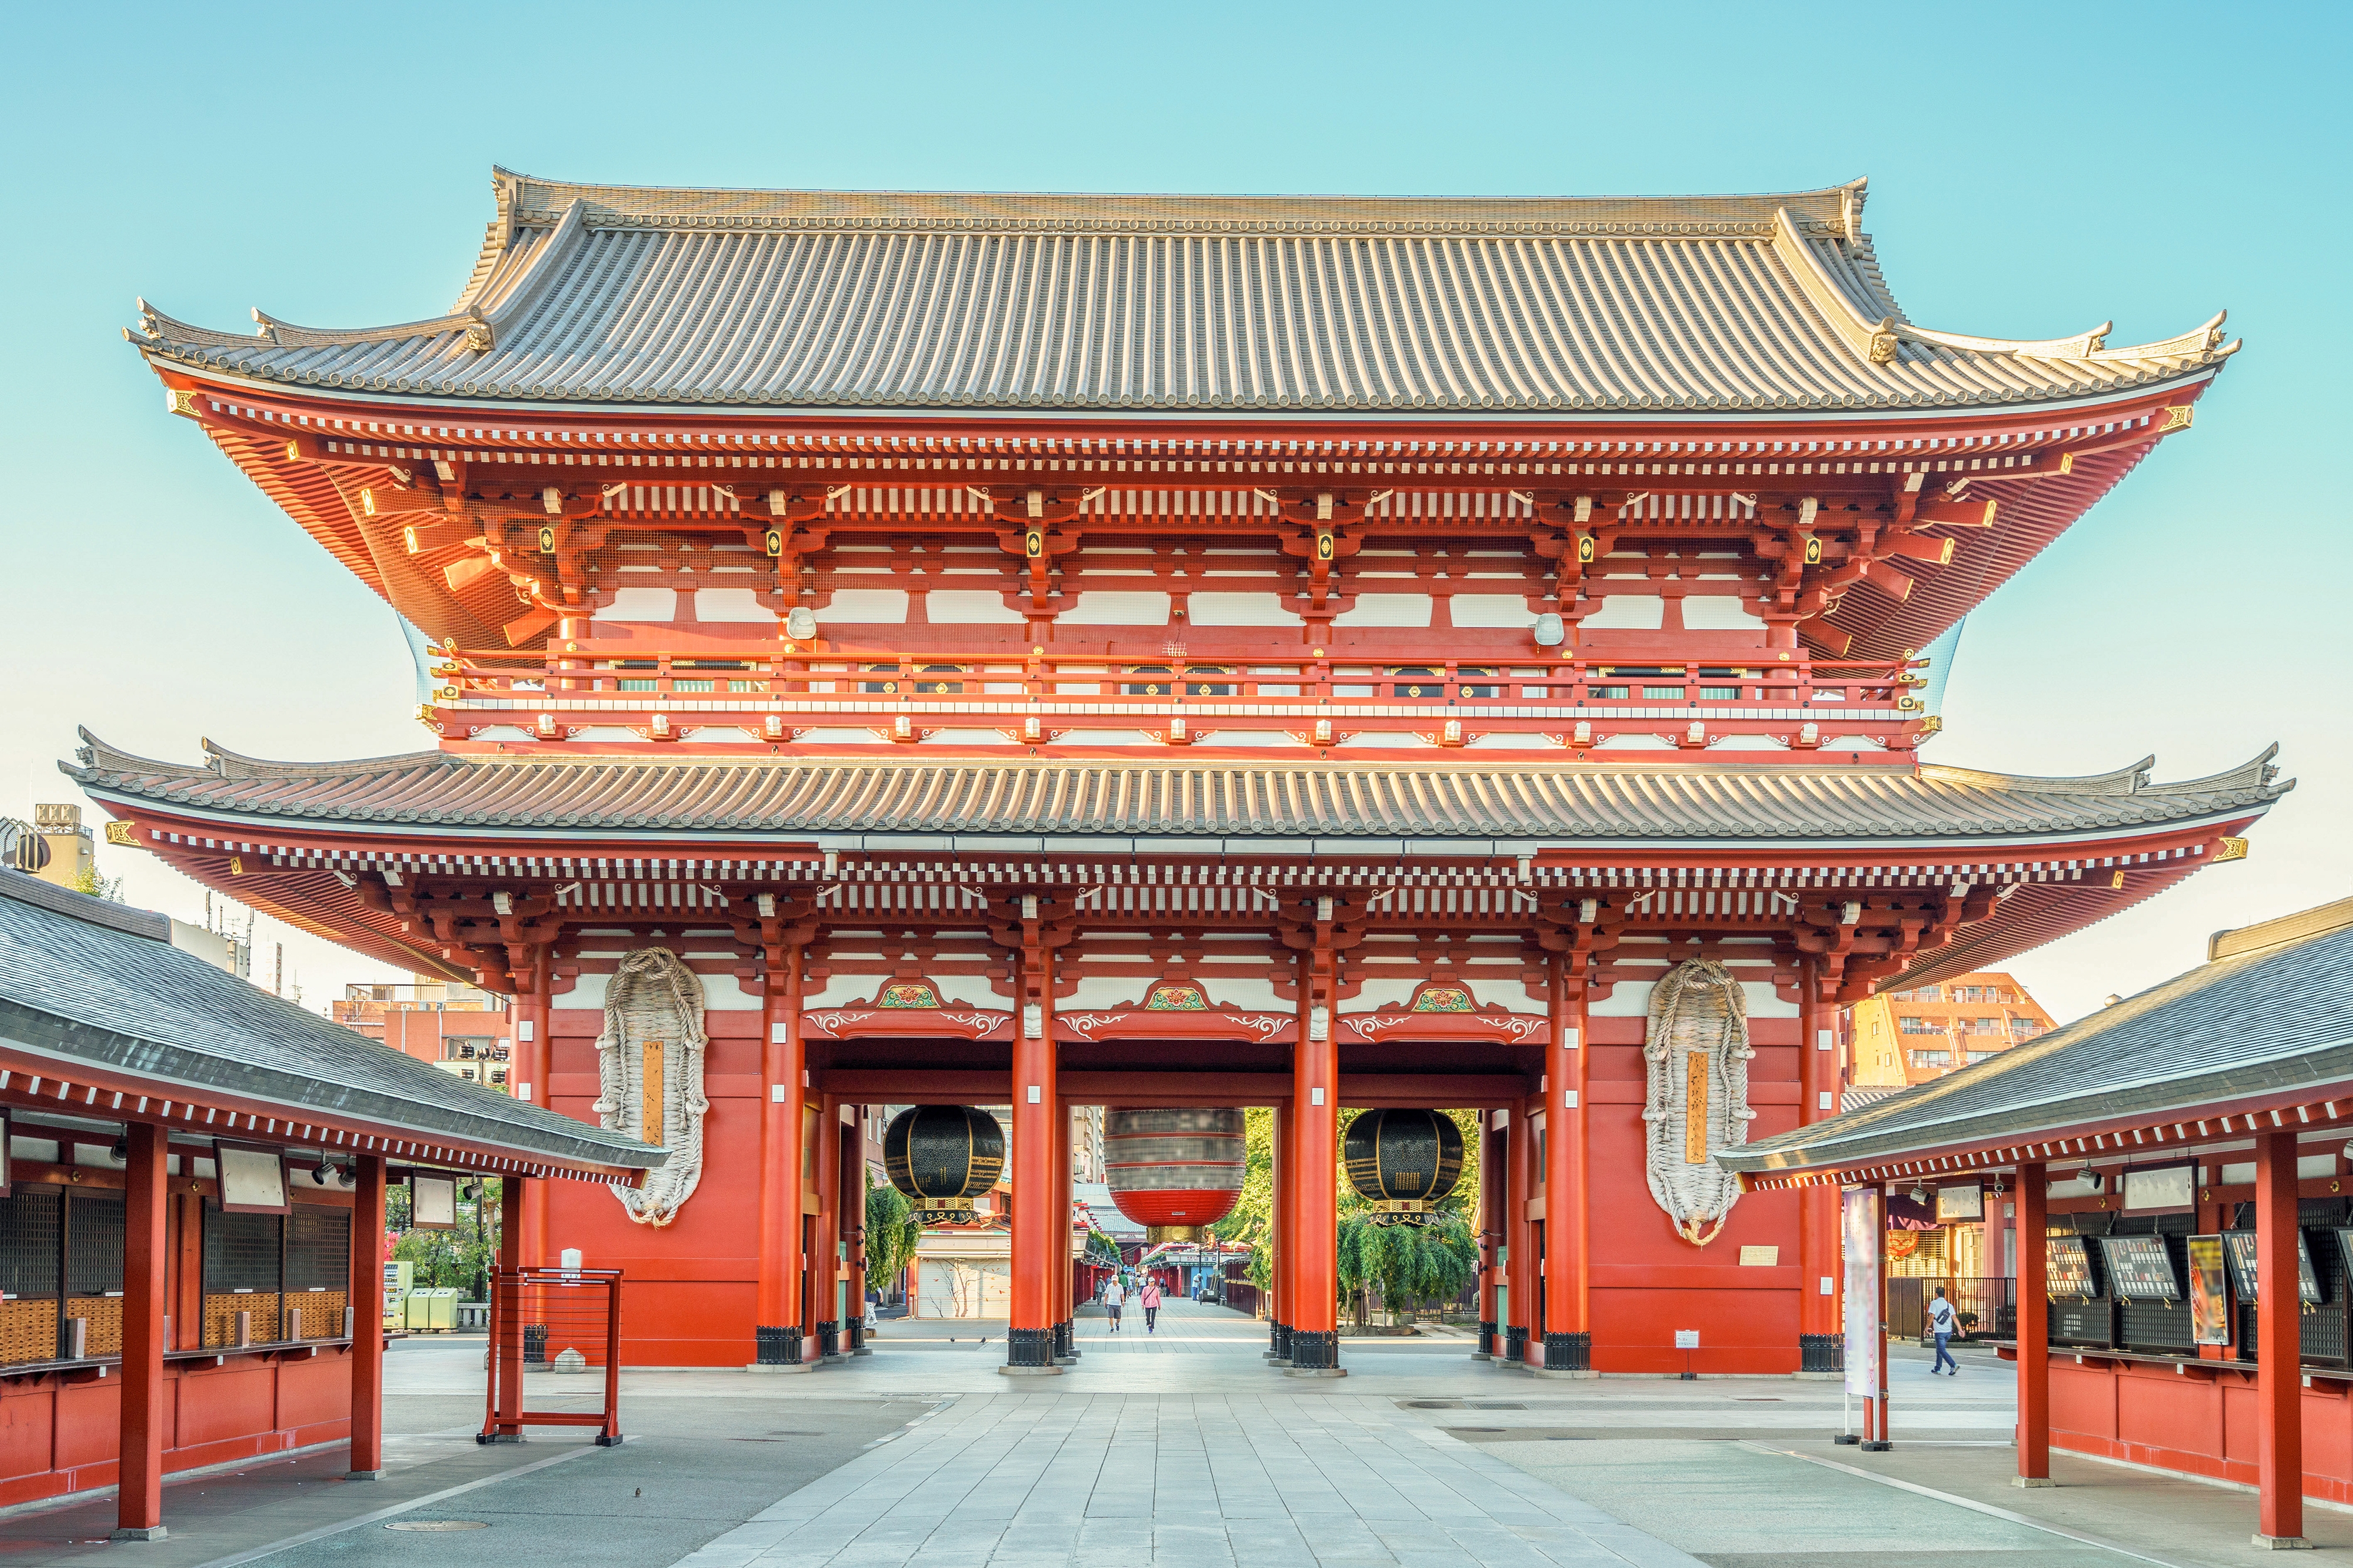 628年もの時を経て、今も文化の象徴として街の中心となっている浅草寺を回ろう